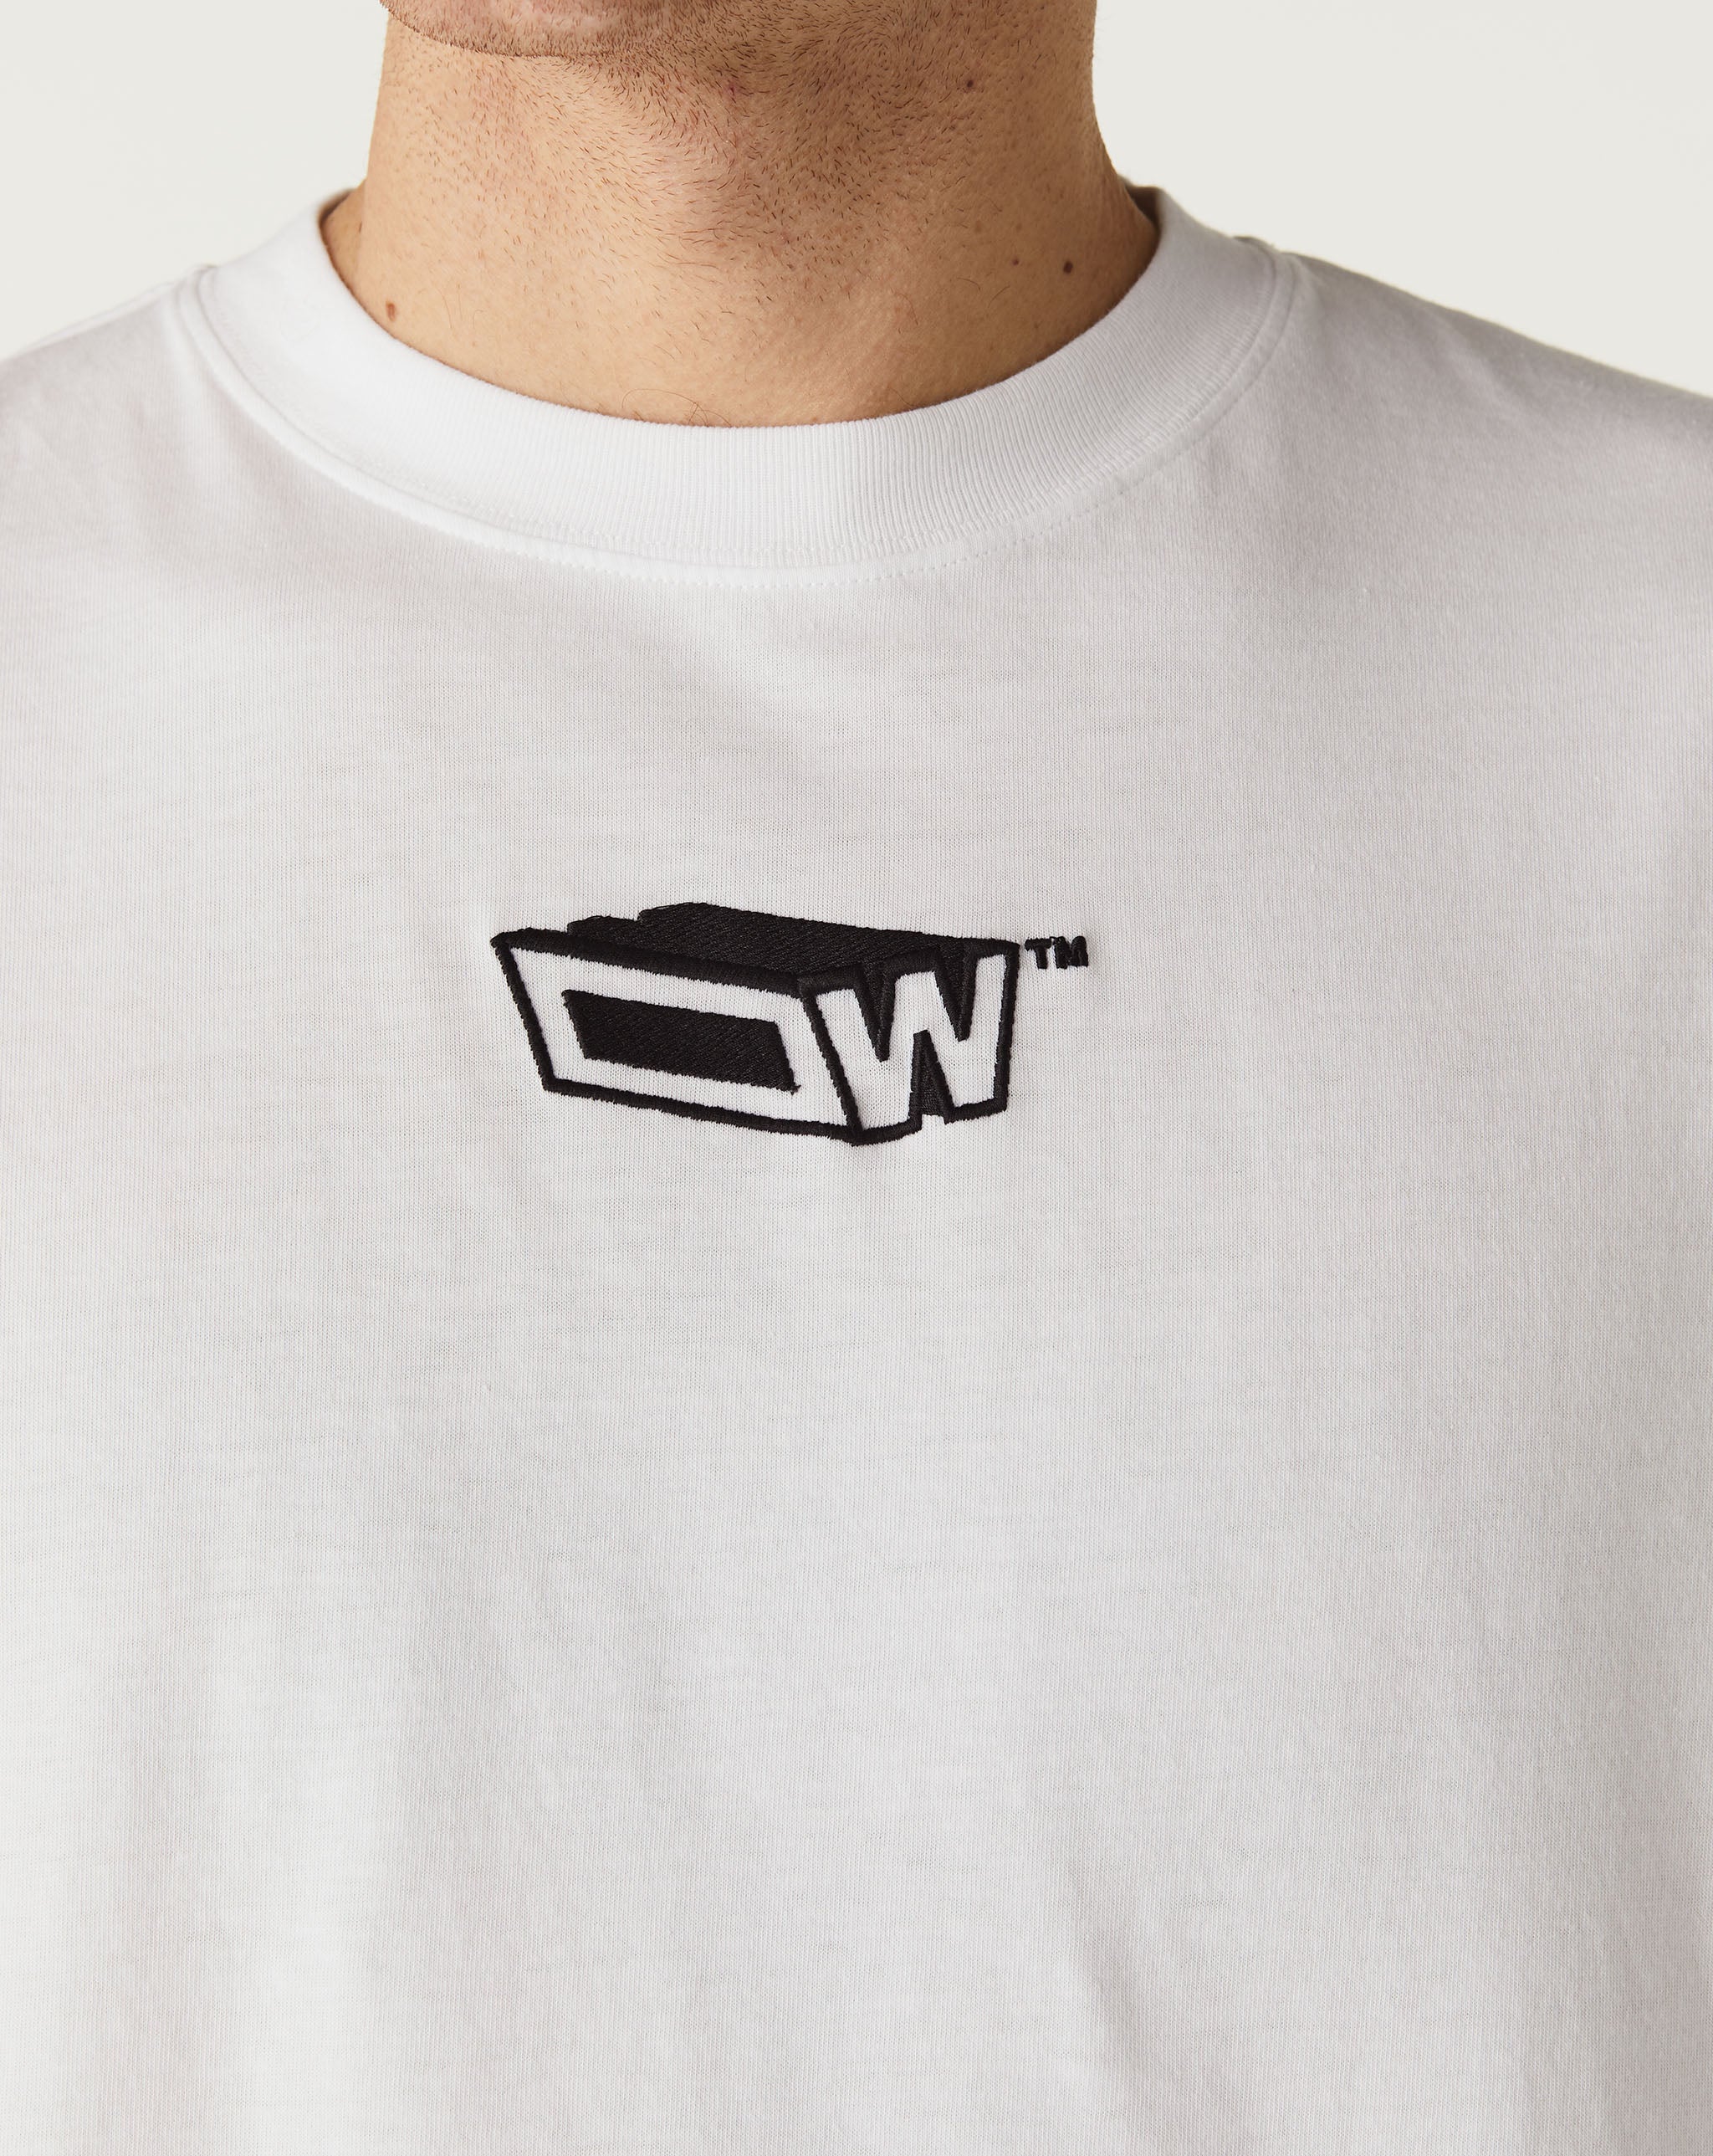 Off-White Graffiti Zine Skate T-Shirt  - XHIBITION